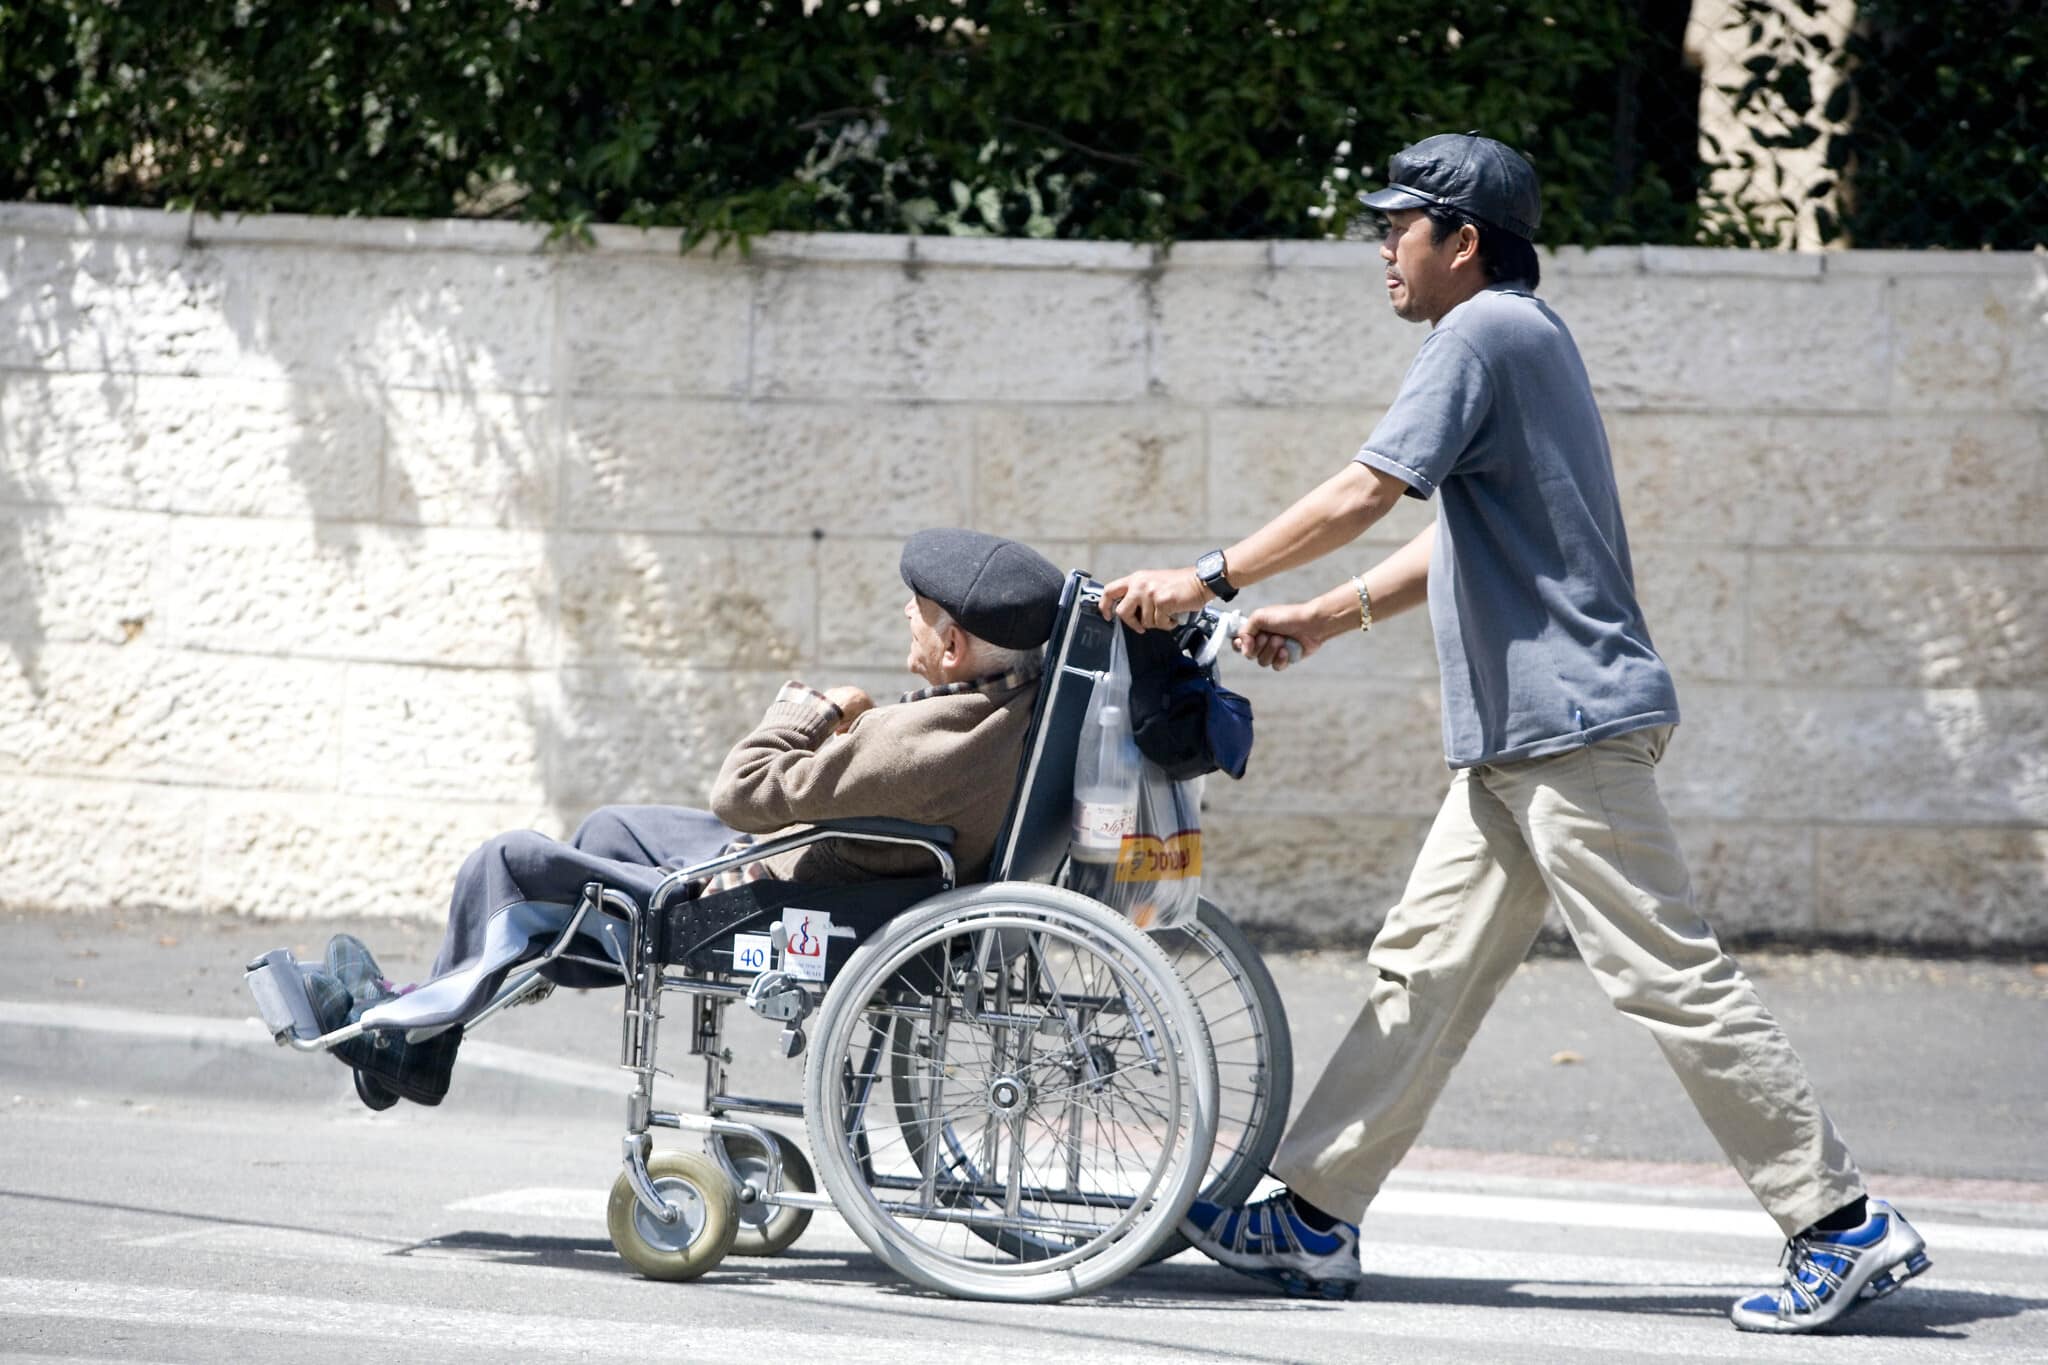 אילוסטרציה: גבר פיליפיני מטפל בקשיש ישראלי היושב בכיסא גלגלים (צילום: Abir Sultan/Flash90)